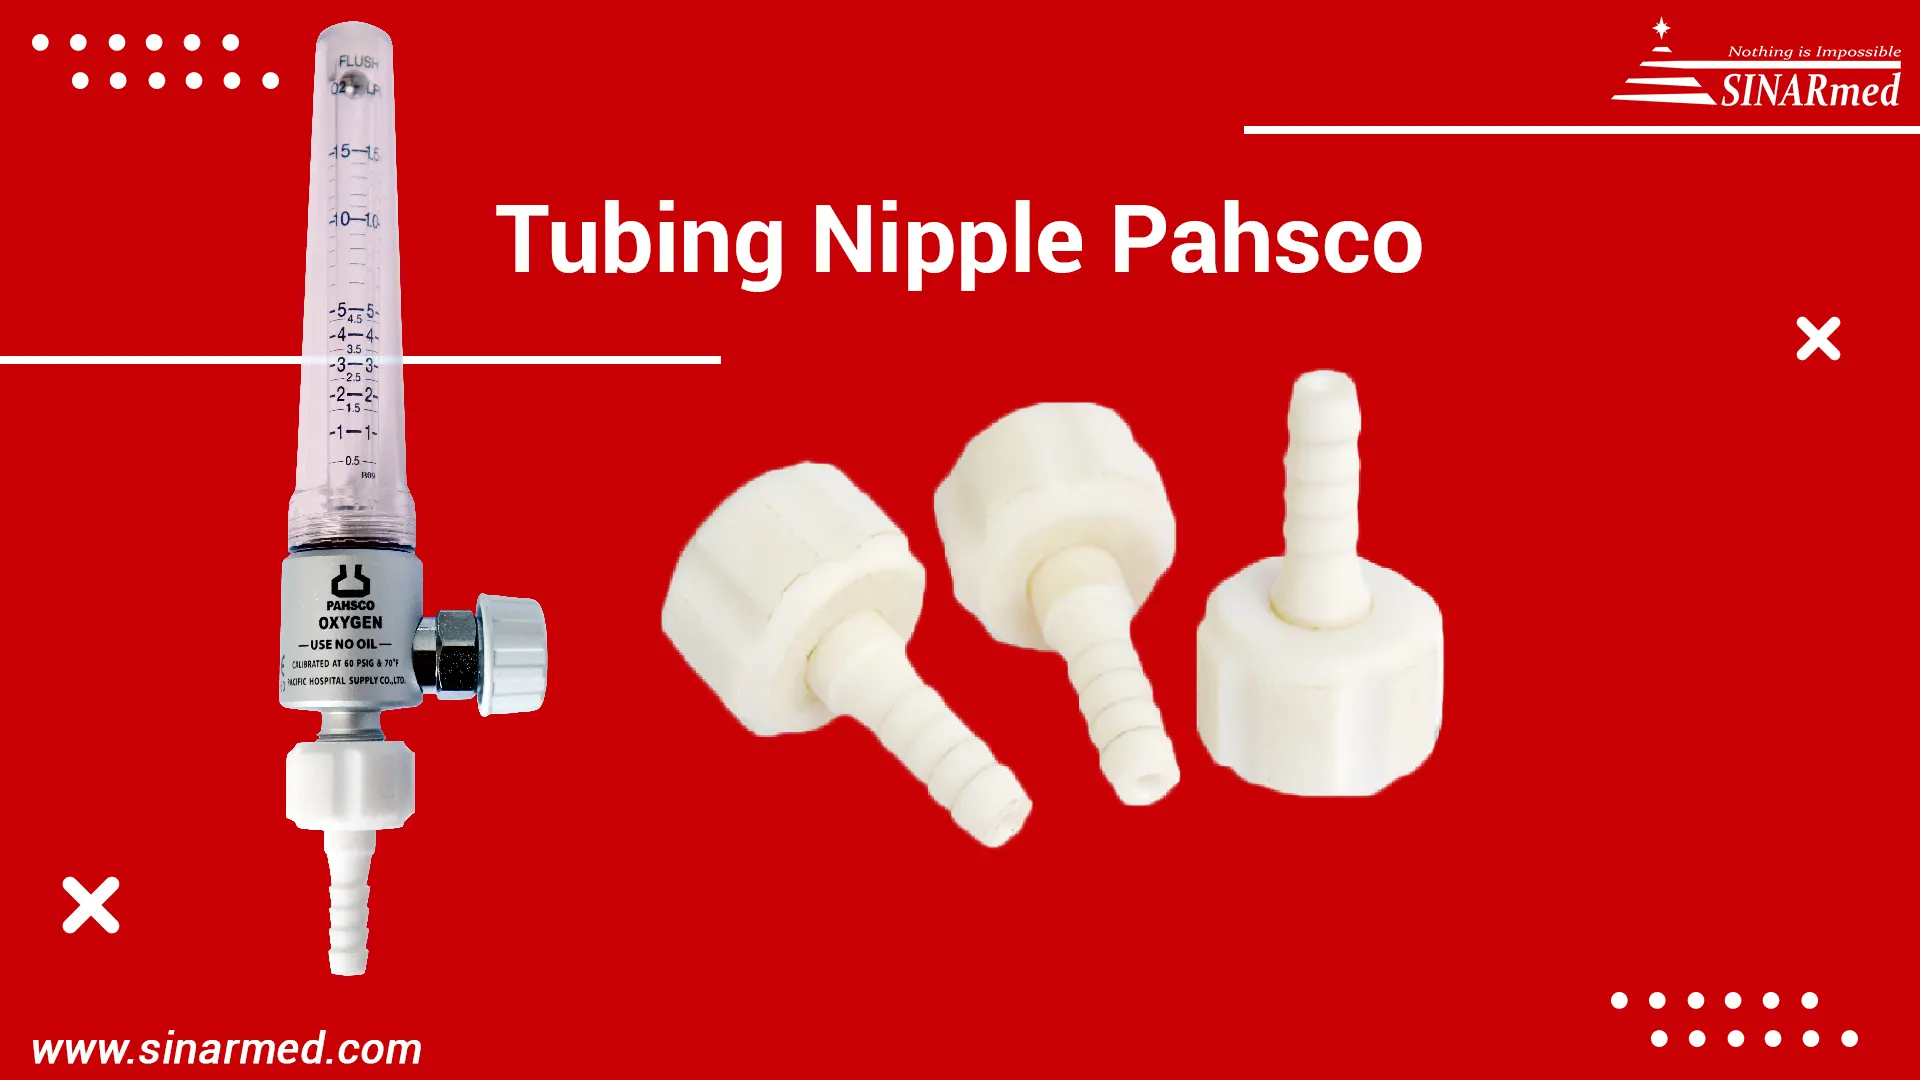 Tubing Nipple Pahsco